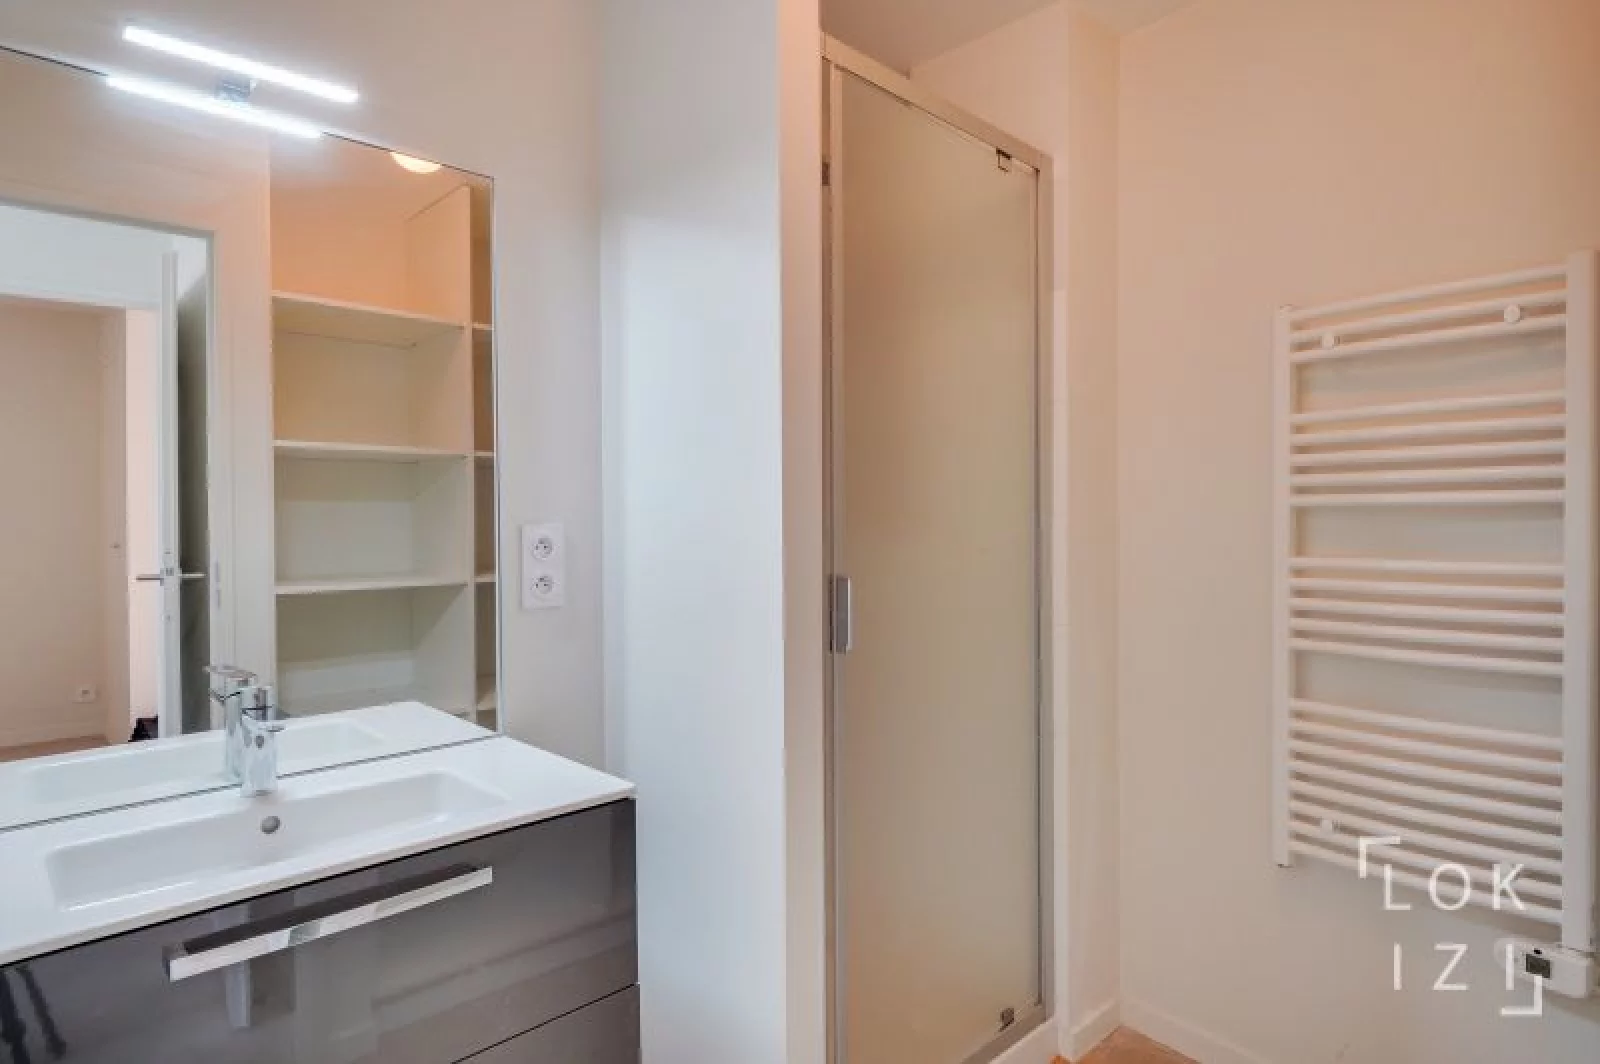 Location appartement meublé 2 pièces 63m² (Bordeaux - St Augustin)